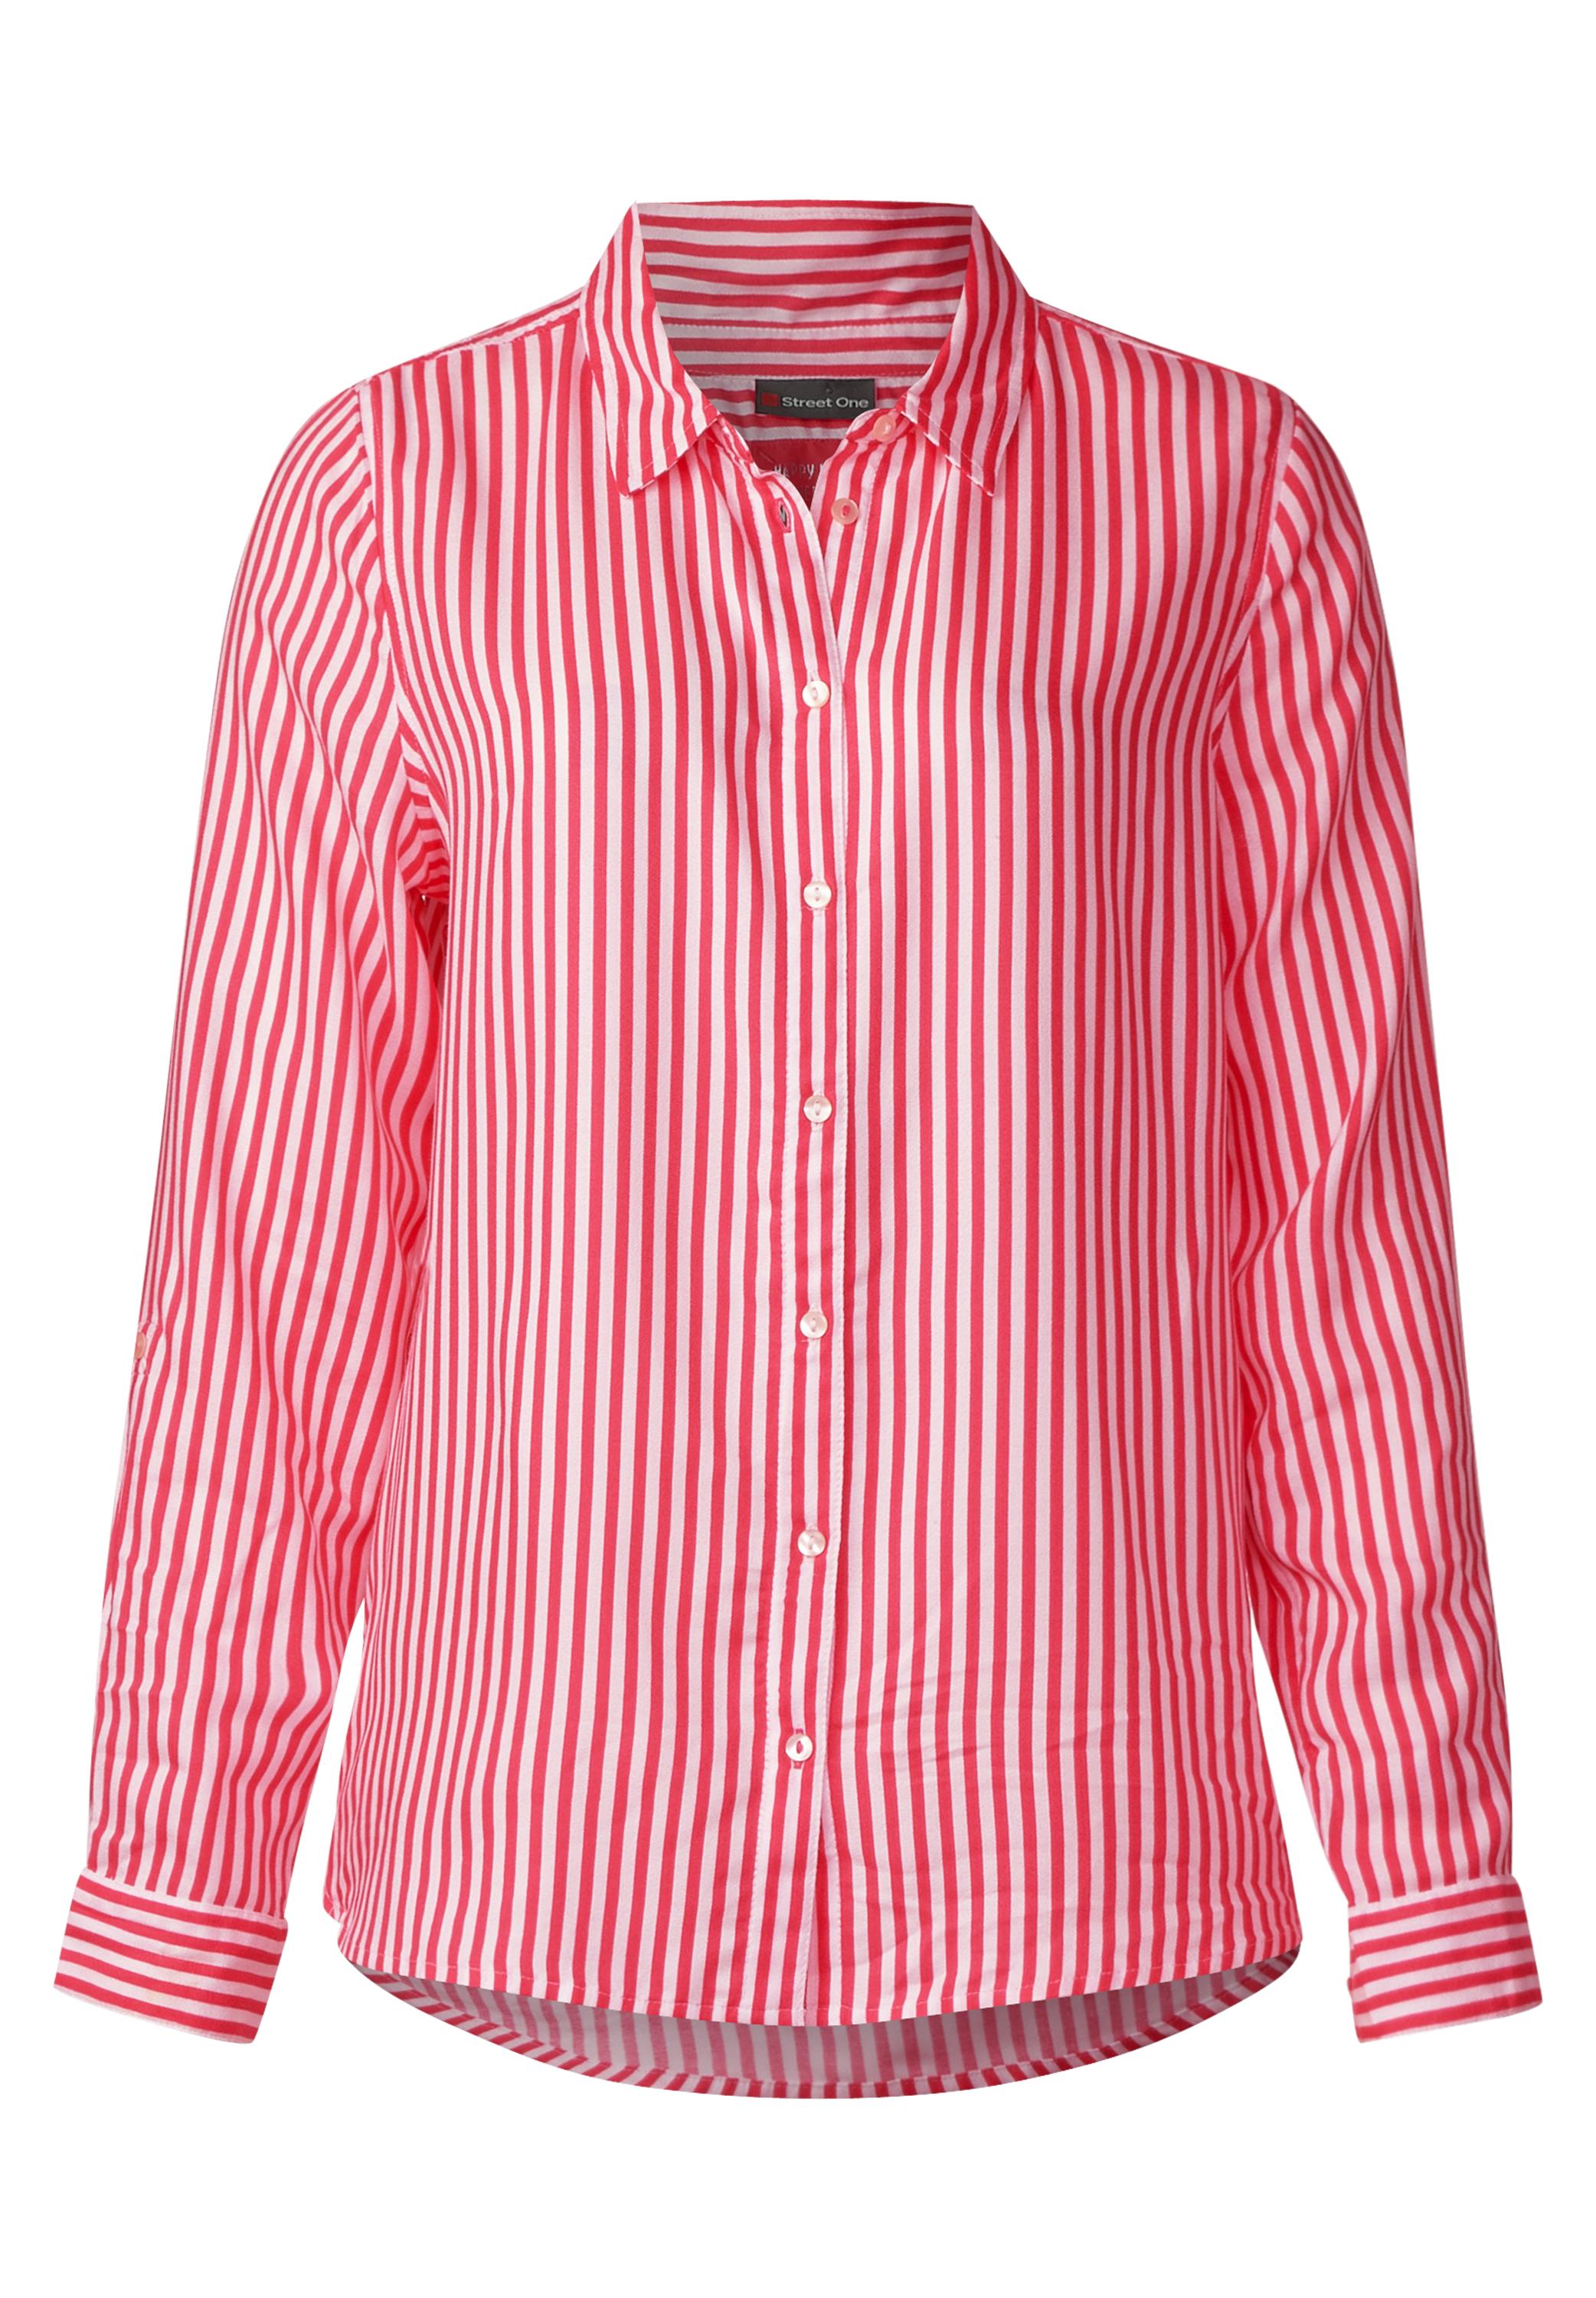 Розовая рубашка в полоску. Canali полосатая рубашка. Рубашка Томми Хилфигер розовая в полоску. Рубашка в полоску. Полосатая рубашка мужская.